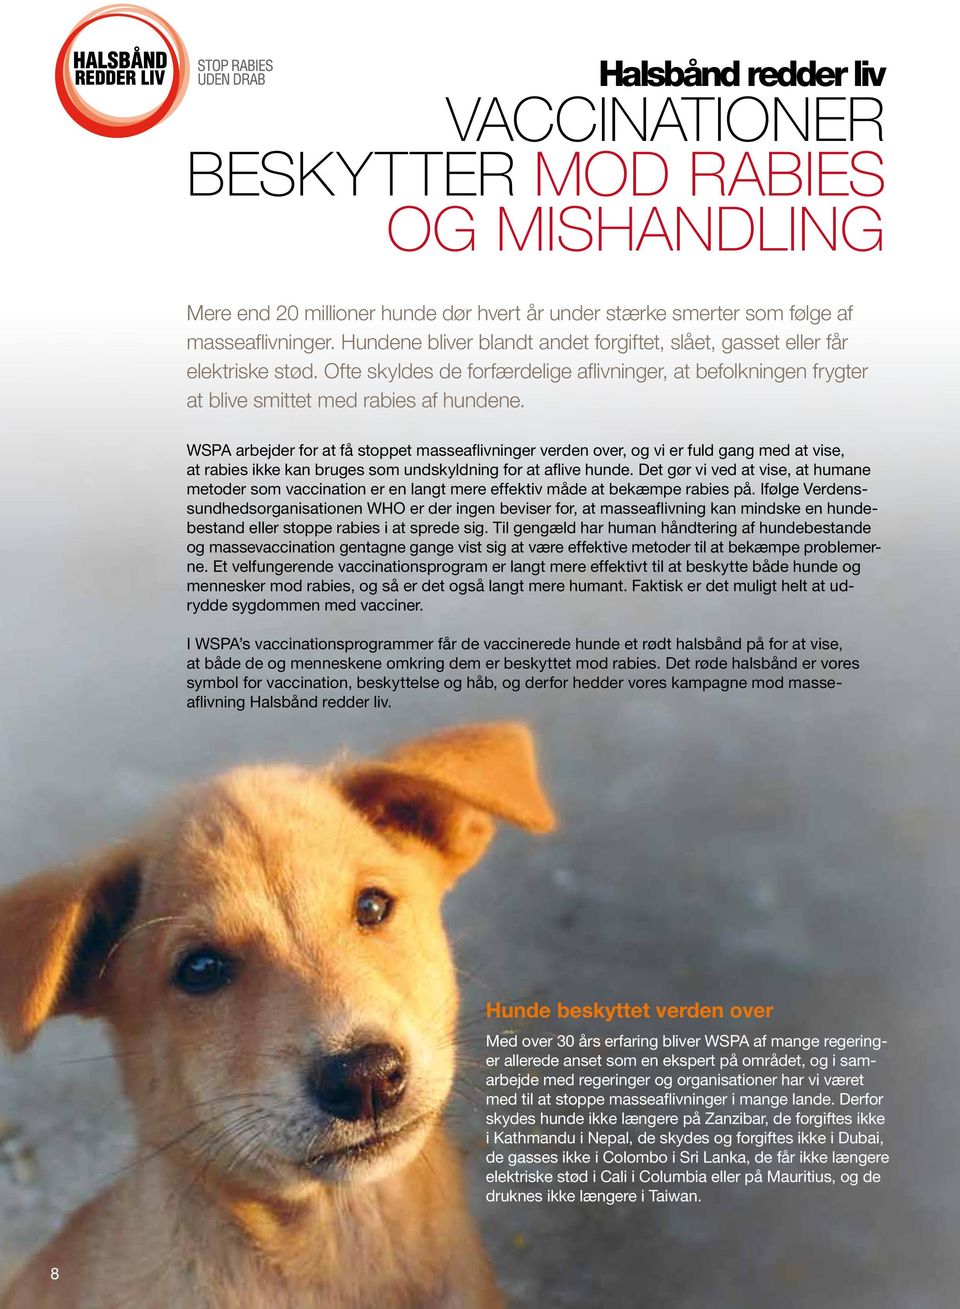 WSPA arbejder for at få stoppet masseaflivninger verden over, og vi er fuld gang med at vise, at rabies ikke kan bruges som undskyldning for at aflive hunde.